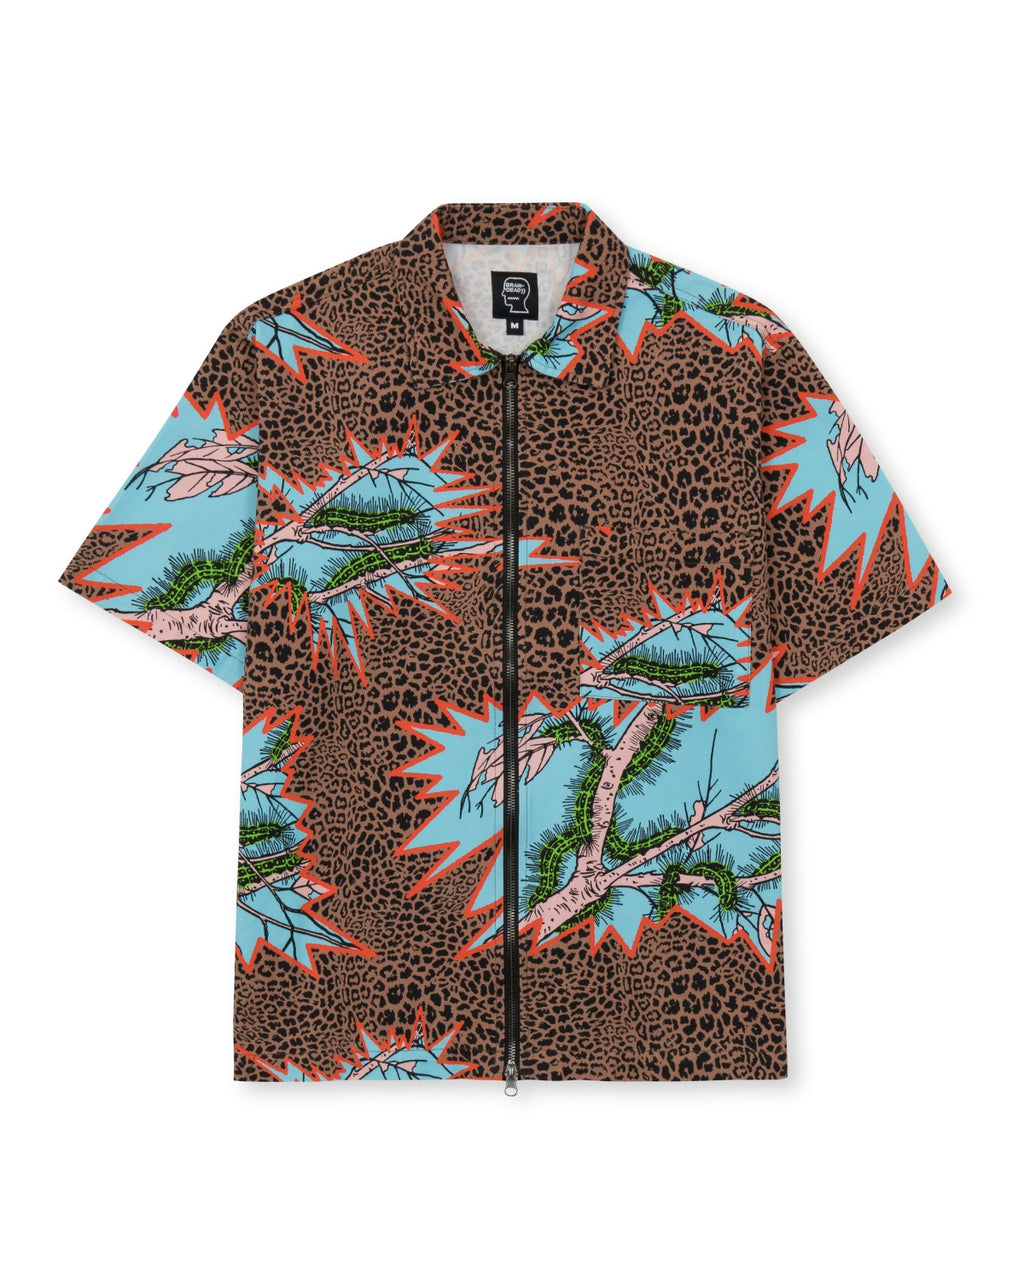 Mutated Cheetah Full Zip Short Sleeve Shirt - Brown